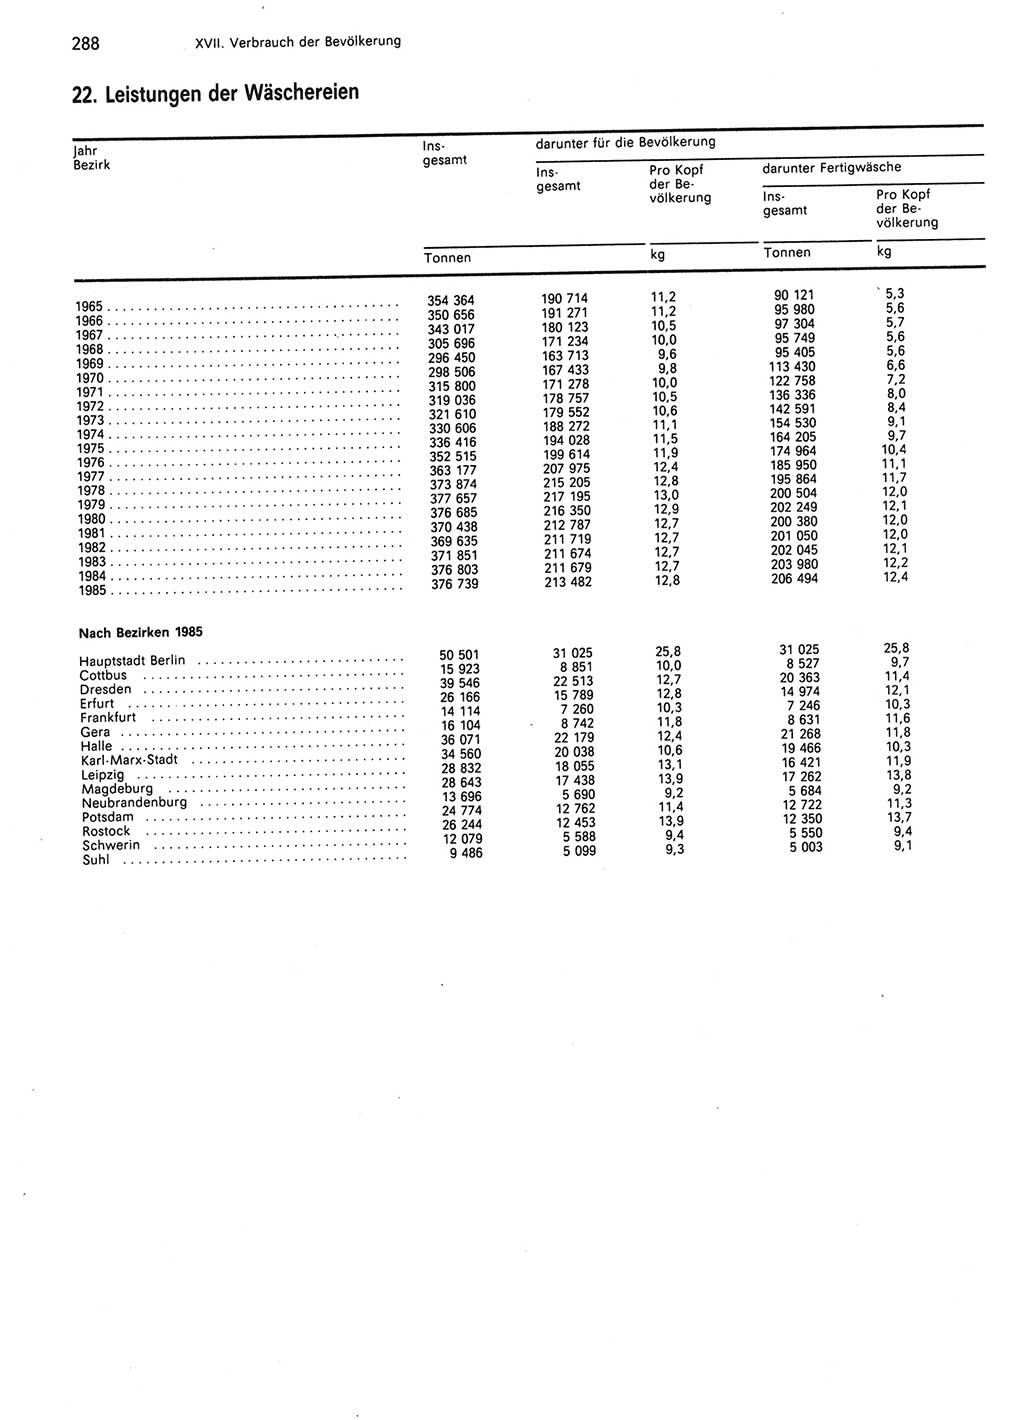 Statistisches Jahrbuch der Deutschen Demokratischen Republik (DDR) 1986, Seite 288 (Stat. Jb. DDR 1986, S. 288)